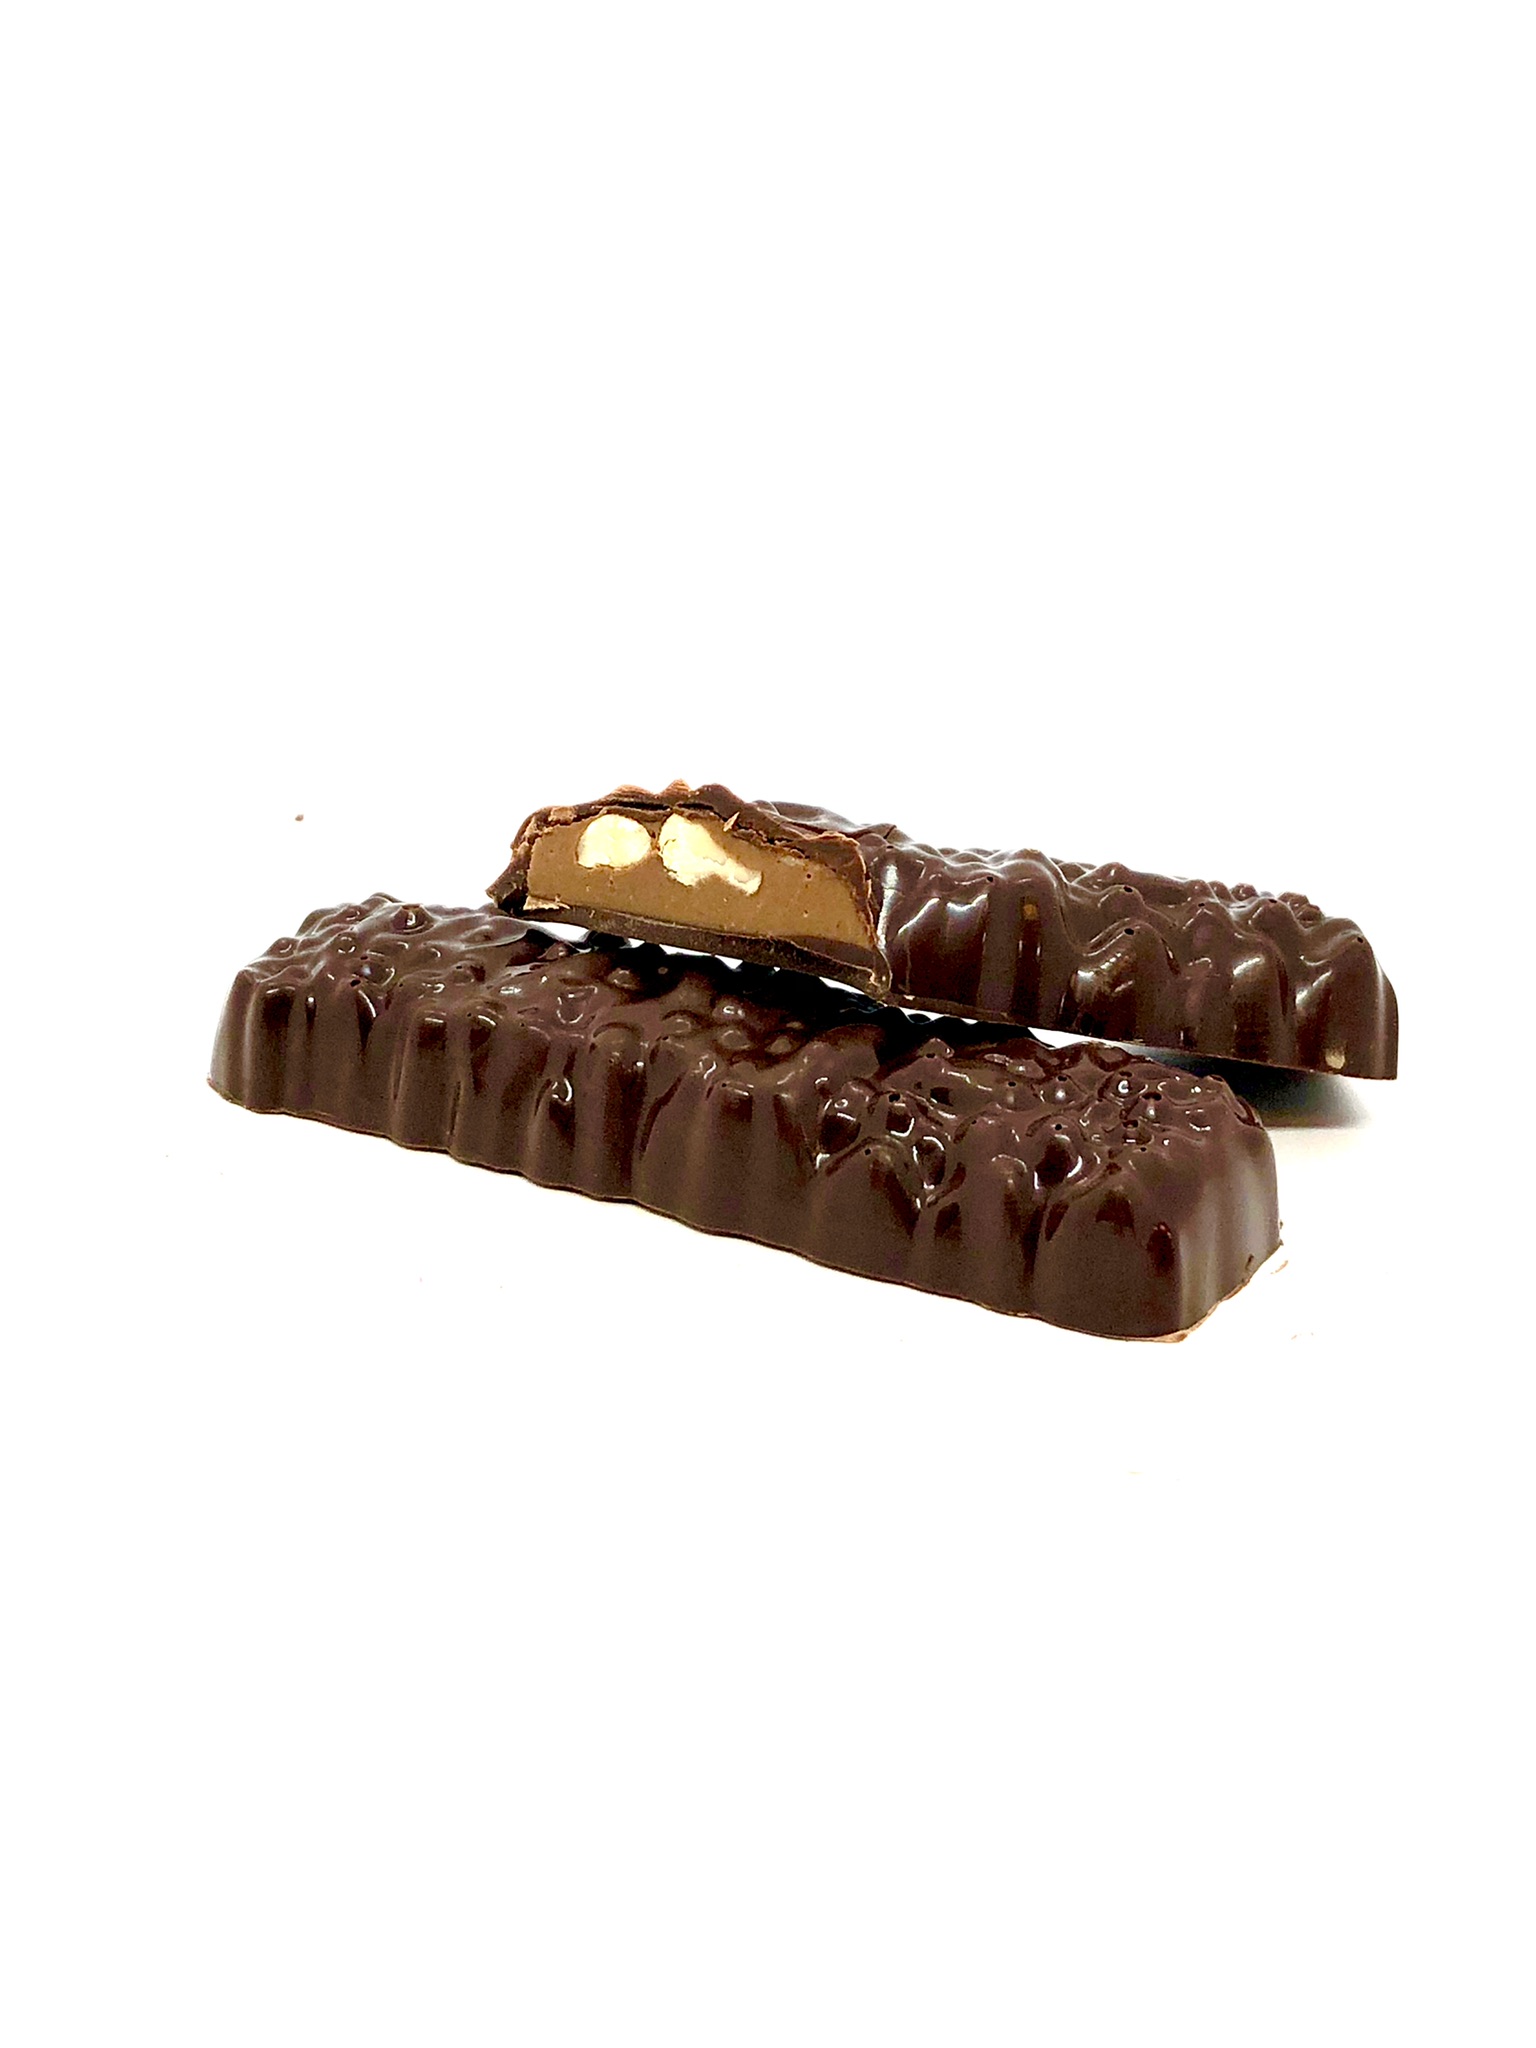 Mörk chokladbar fylld med mjölkchoklad, hackad rostad hasselnöt och krämig hasselnötspraliné.